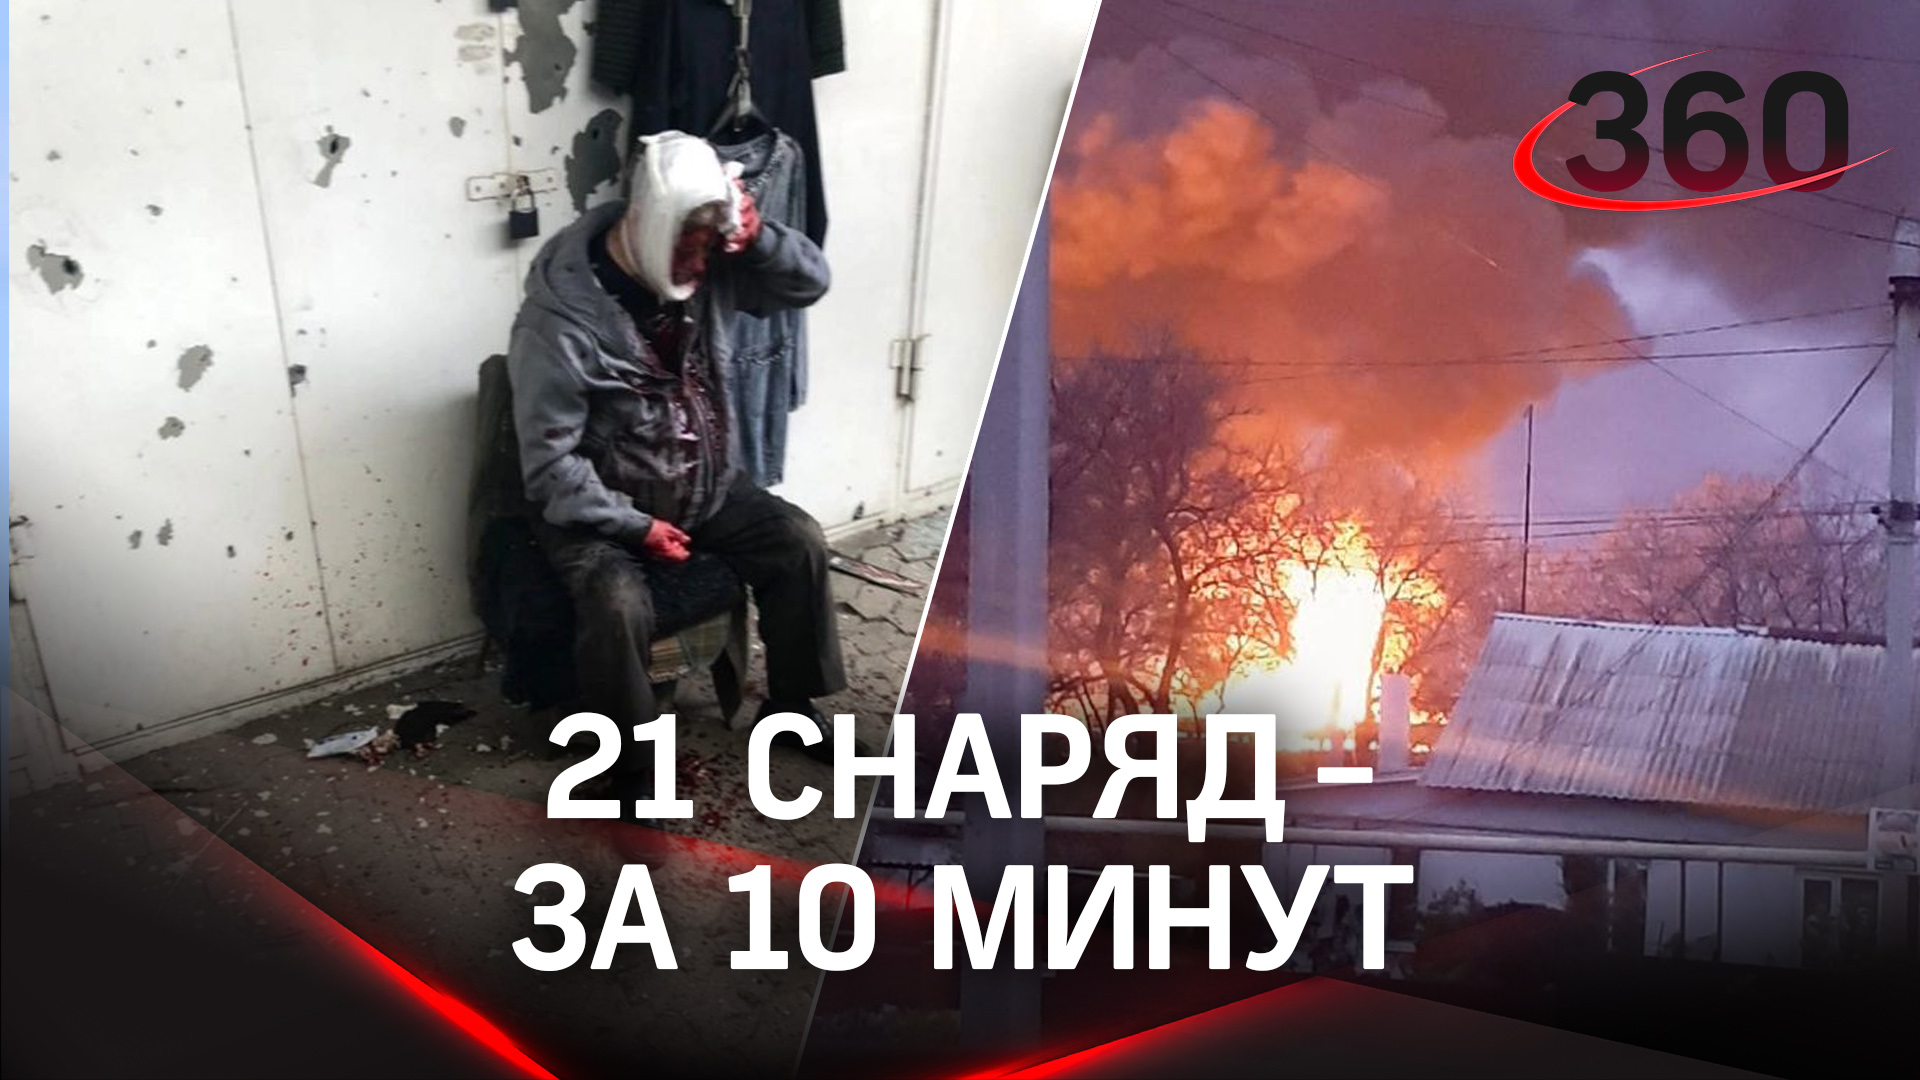 ВСУ начали активно обстреливать Донецк: 21 снаряд выпущен по городу за 10 минут